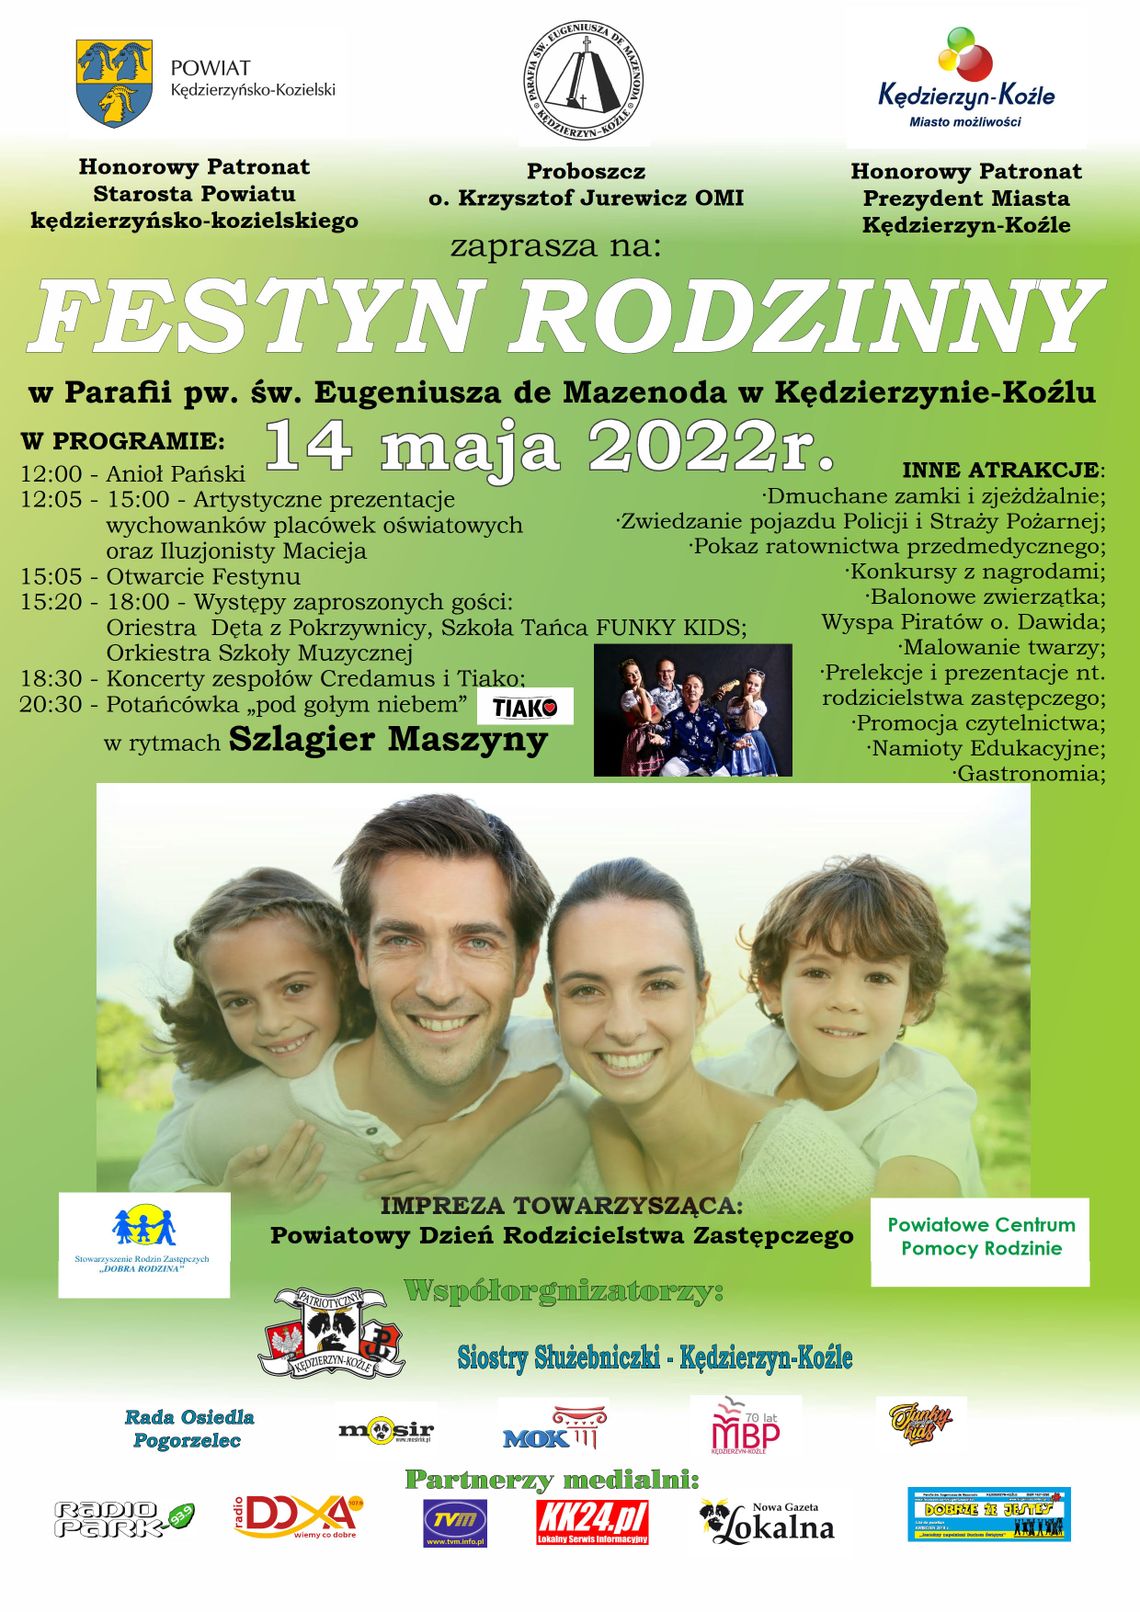 Festyn rodzinny w parafii na Pogorzelcu. Program imprezy